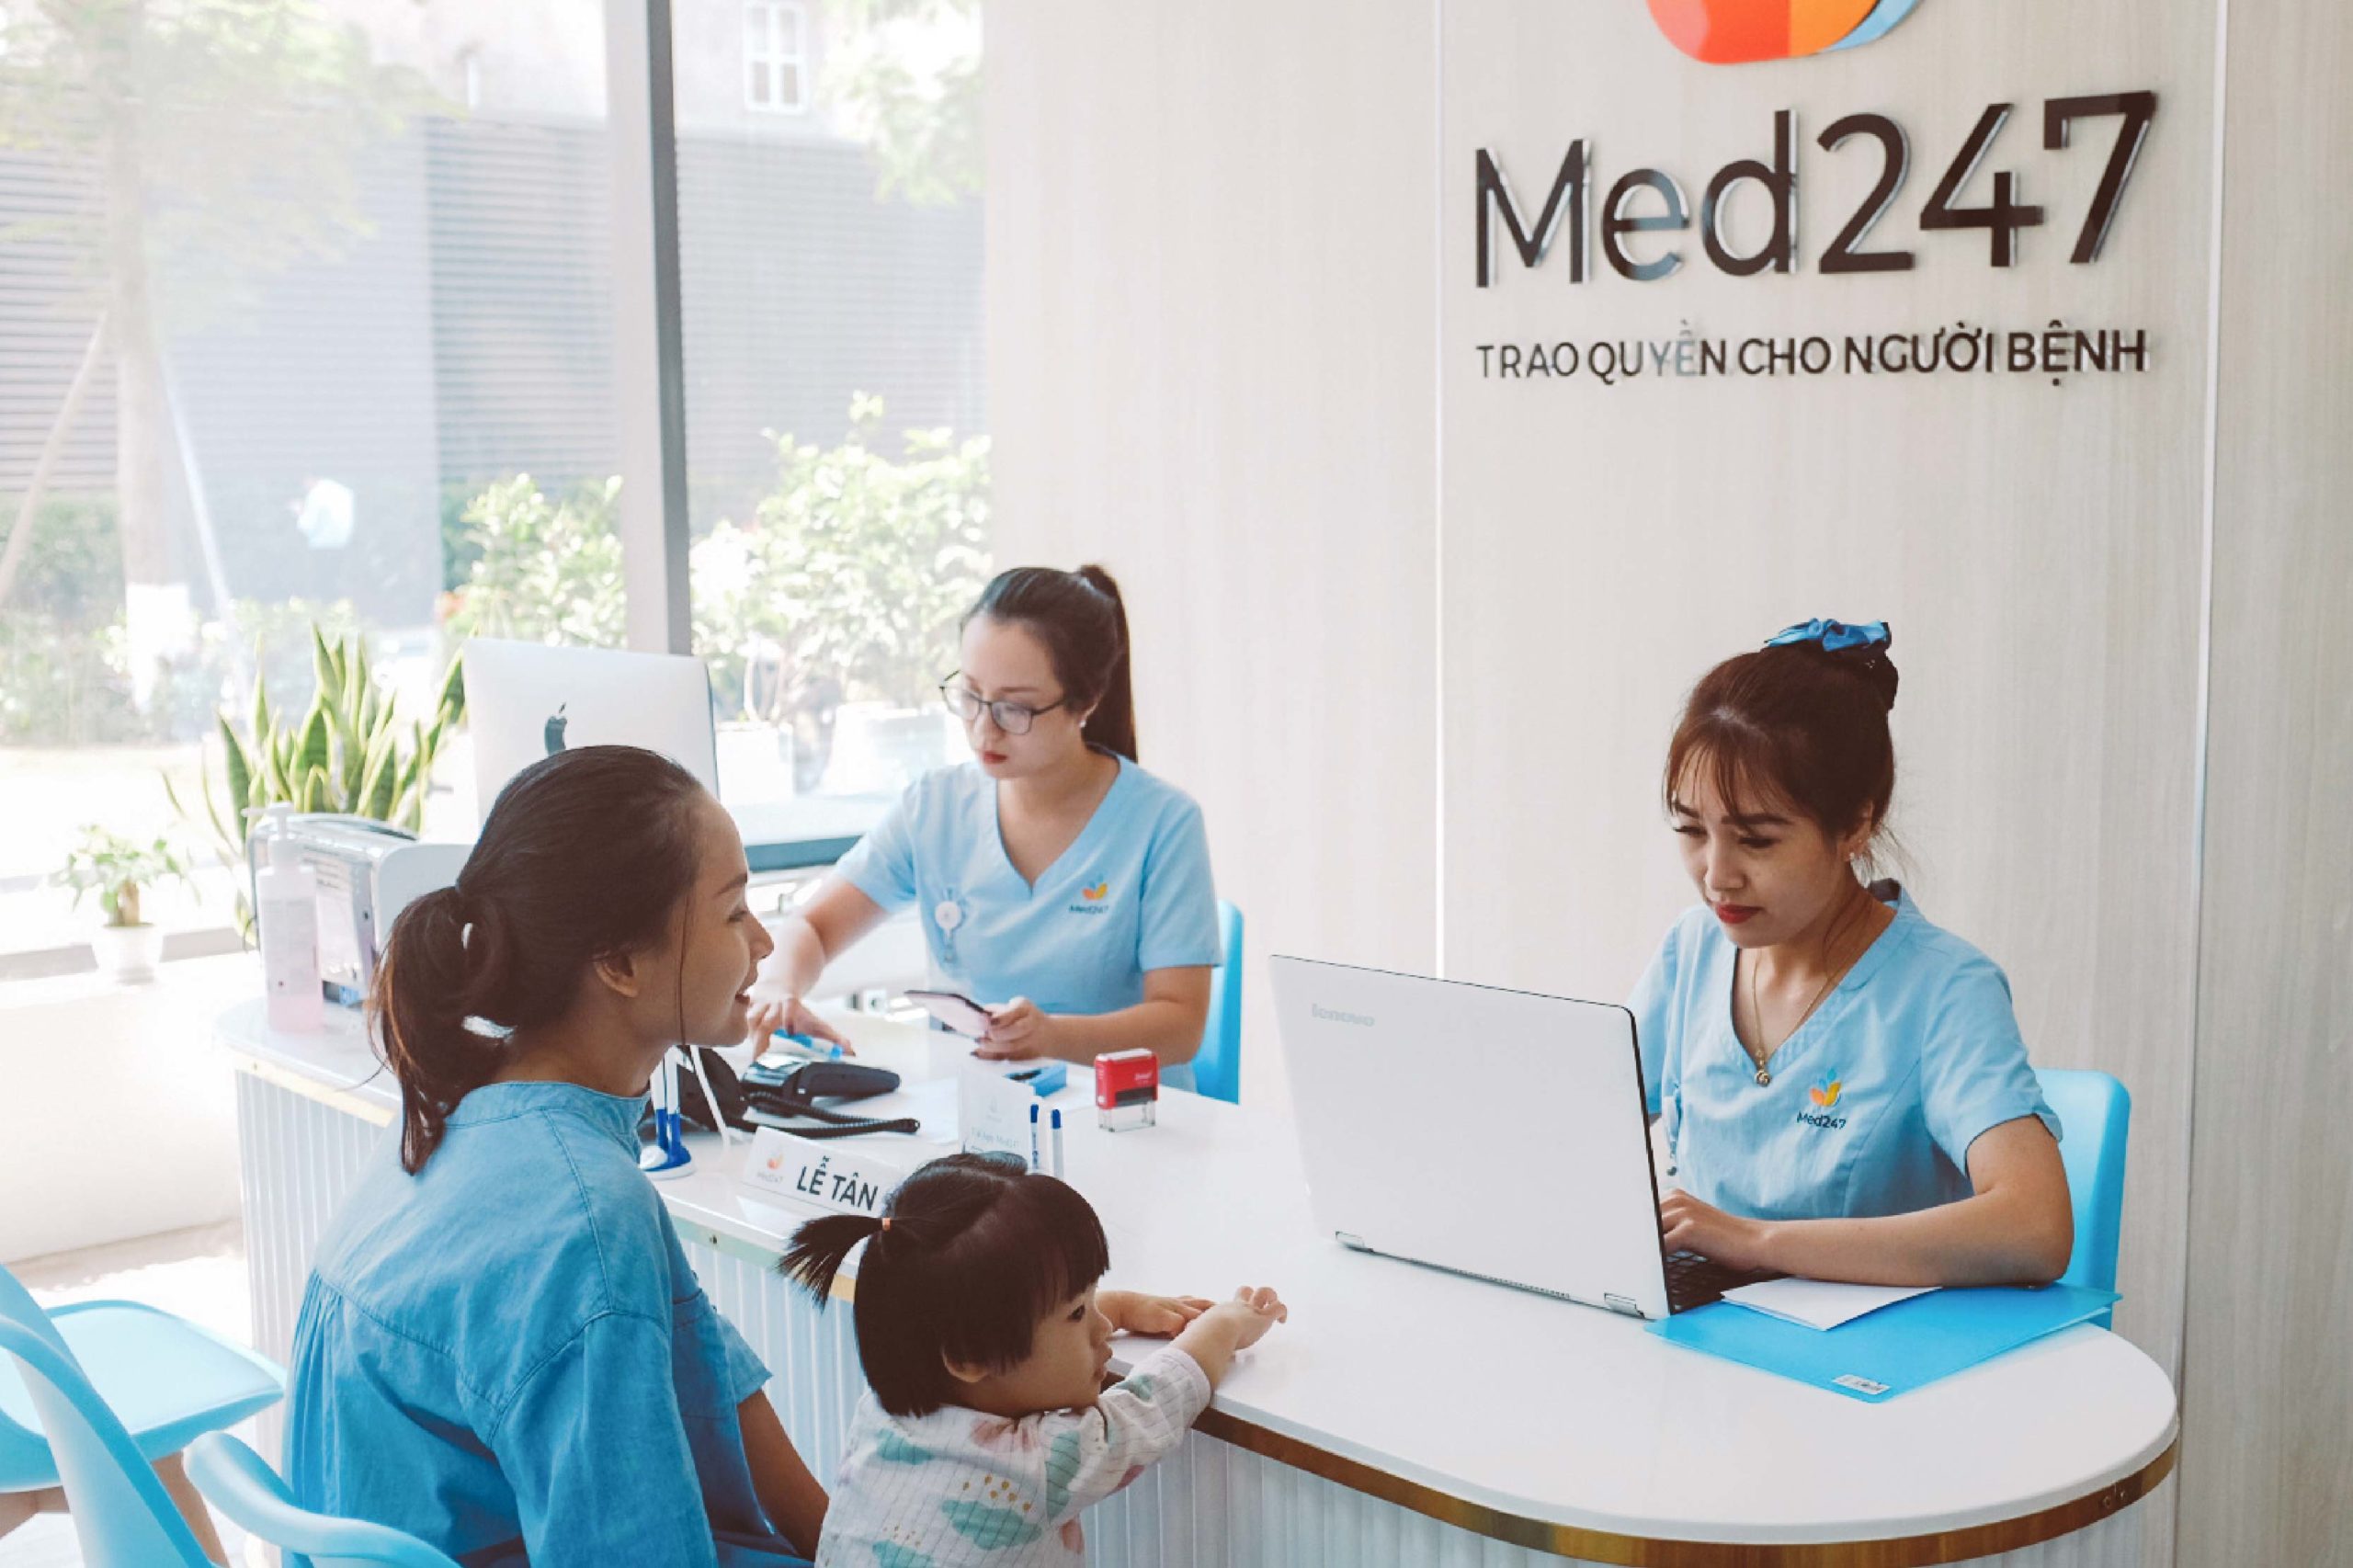 Med247 - Địa chỉ kiểm tra tình trạng thiếu máu lên não uy tín, chất lượng 